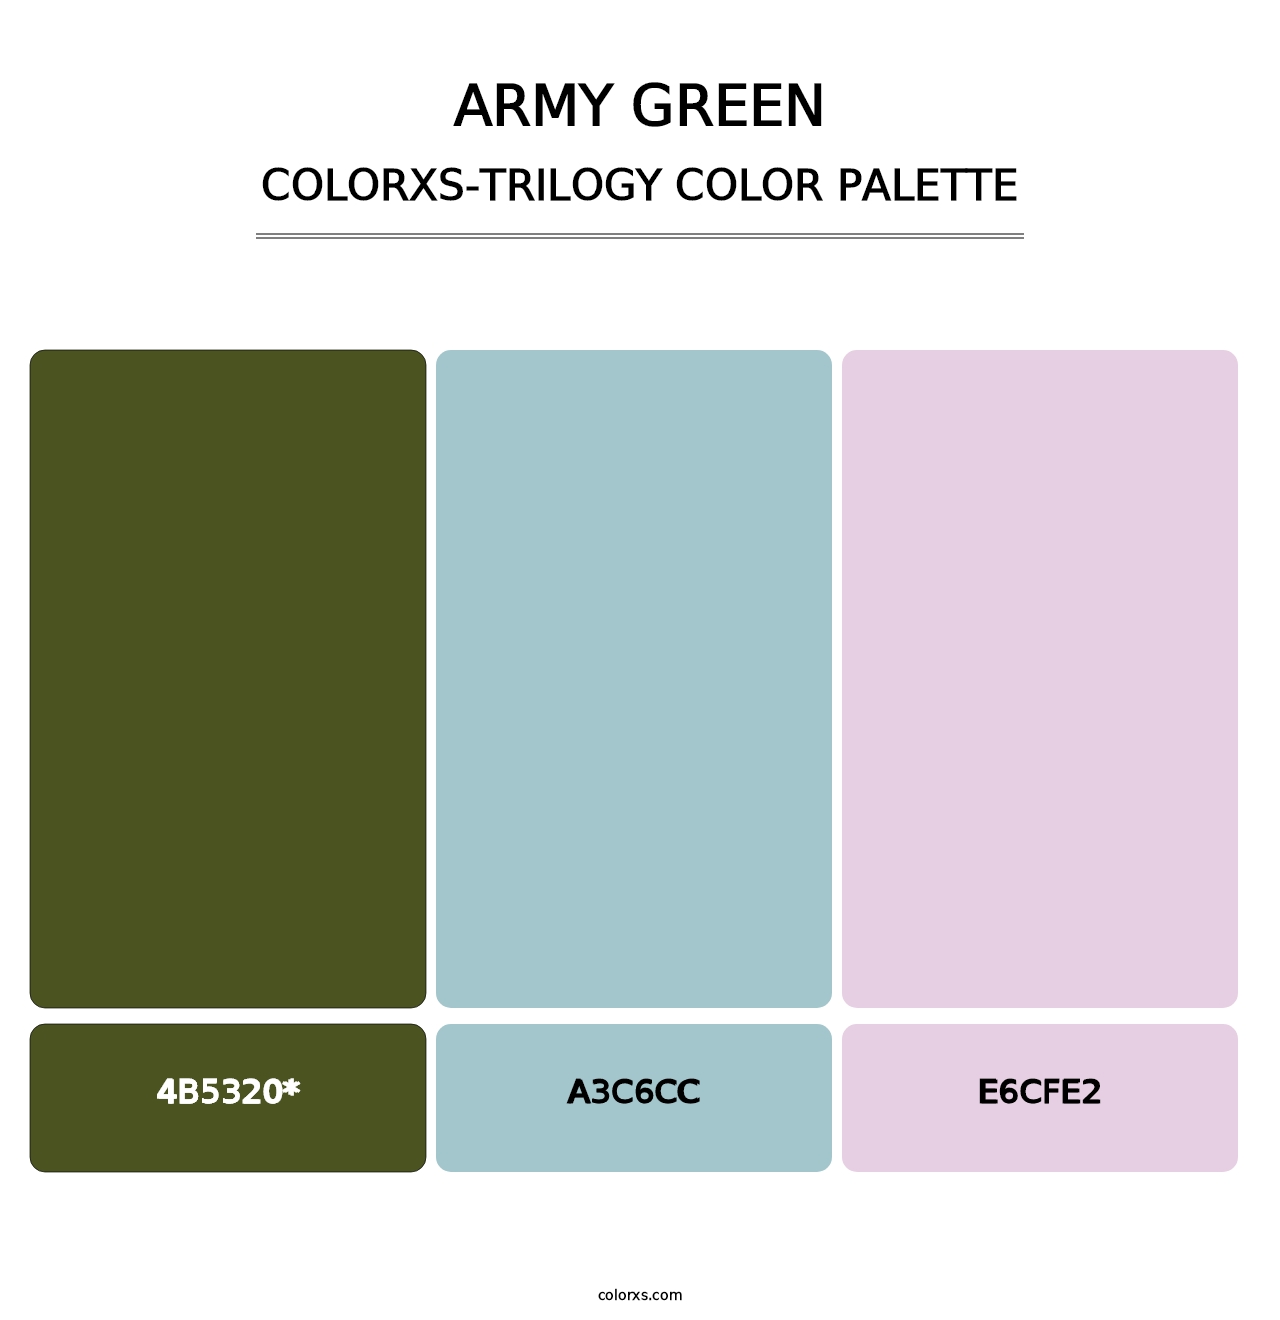 Army Green - Colorxs Trilogy Palette